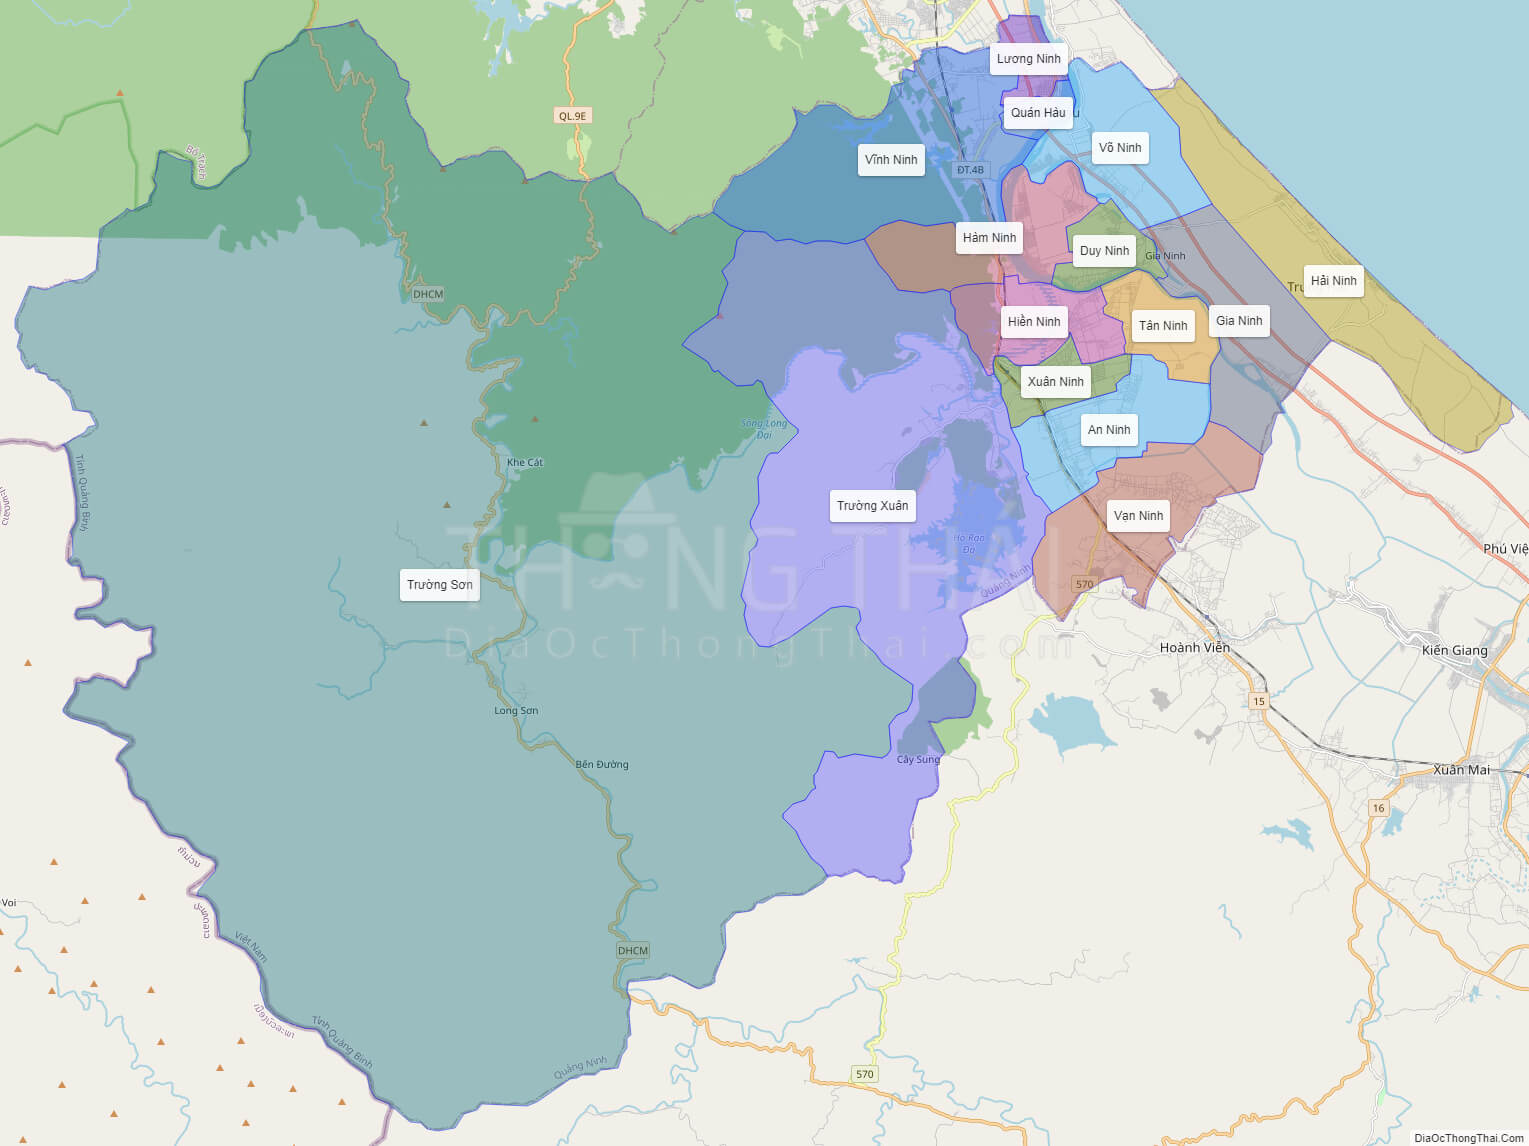 Bản đồ huyện Quảng Ninh đã được cập nhật mới đầy đủ thông tin về quy hoạch phát triển kinh tế và dự án đầu tư trọng điểm của huyện. Nơi đây còn có rất nhiều di tích, danh lam thắng cảnh nổi tiếng như Vườn Quốc gia Pu Mat hay Thác Danh chấn động lòng người. Đừng bỏ lỡ cơ hội khám phá nơi này.